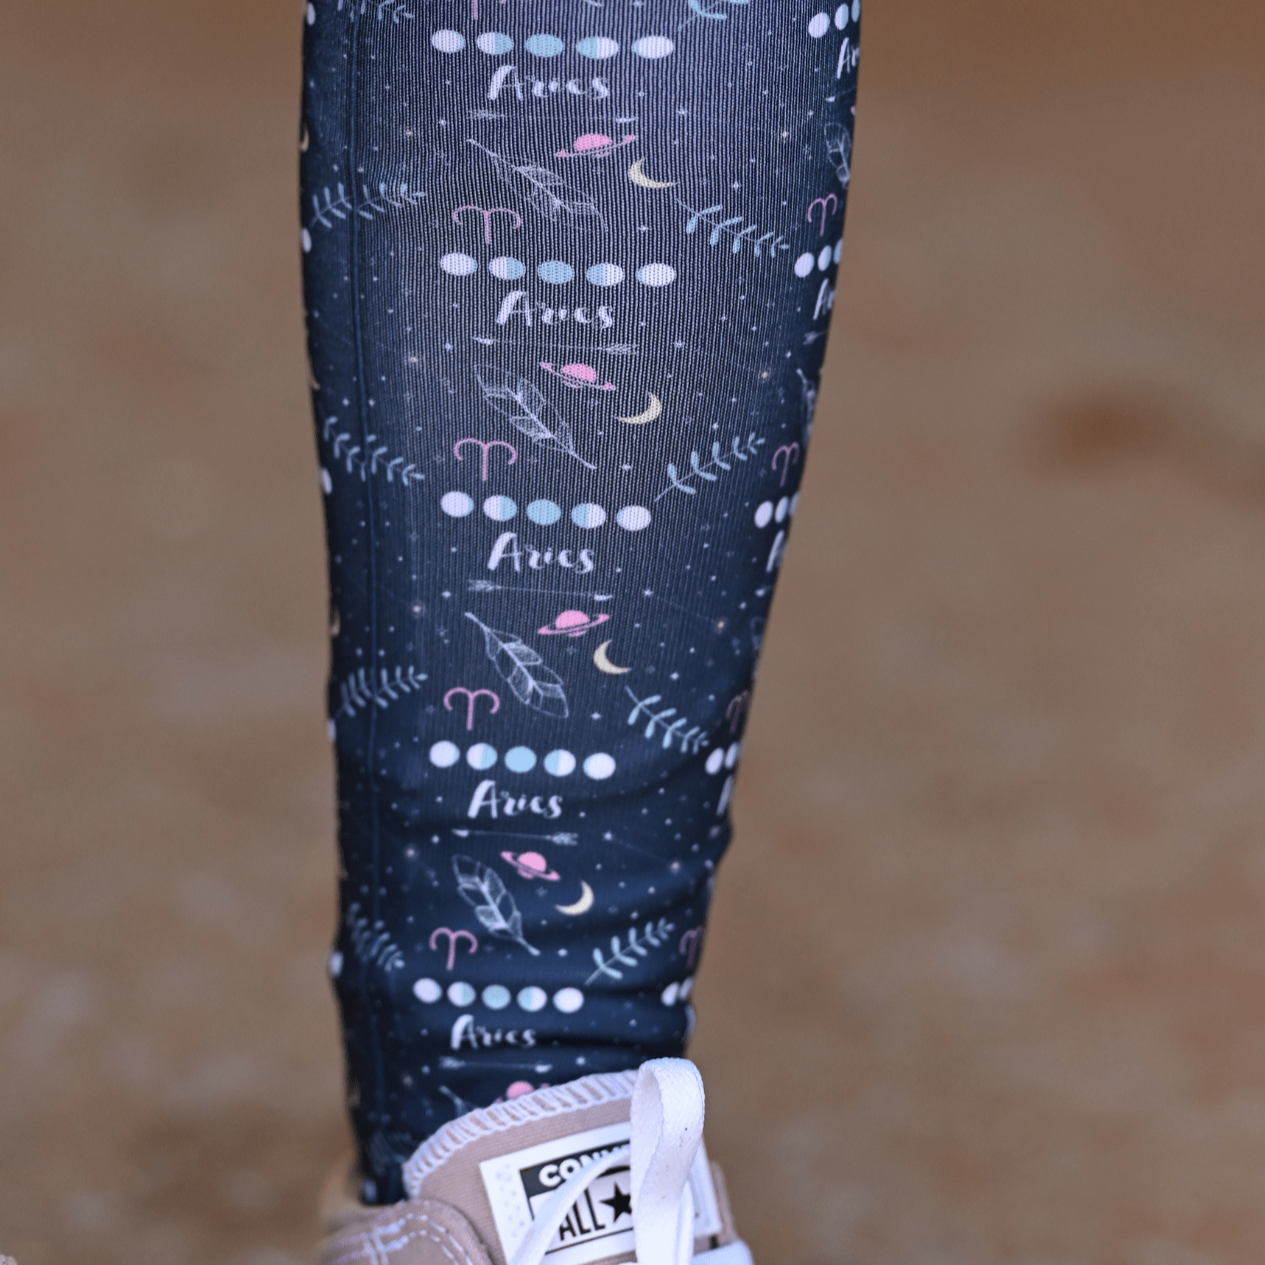 D&S LIMITED EDITION Limited Edition Limited Zodiac Aries Socks equestrian boot socks boot socks thin socks riding socks pattern socks tall socks funny socks knee high socks horse socks horse show socks